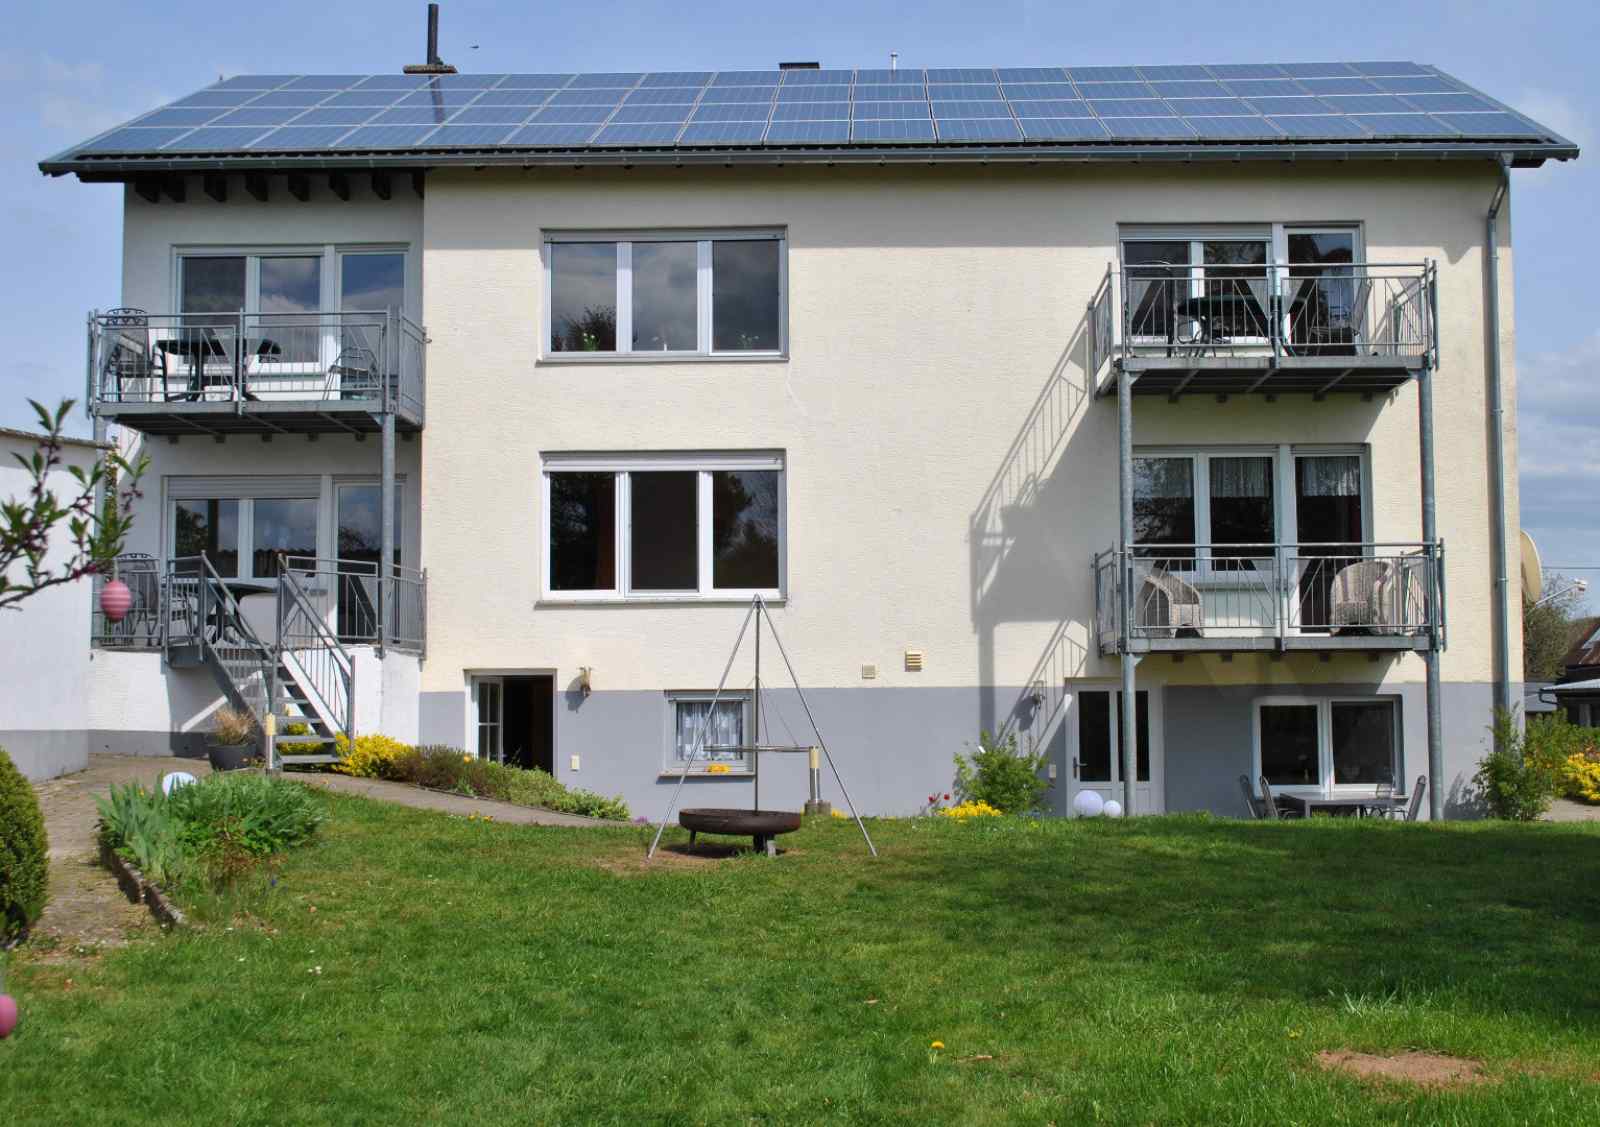 Heerlijkehuisjes.nl Mooi 3 persoons appartement in een idyllisch dorp in de Eifel - Duitsland - Europa - Oberscheidweiler